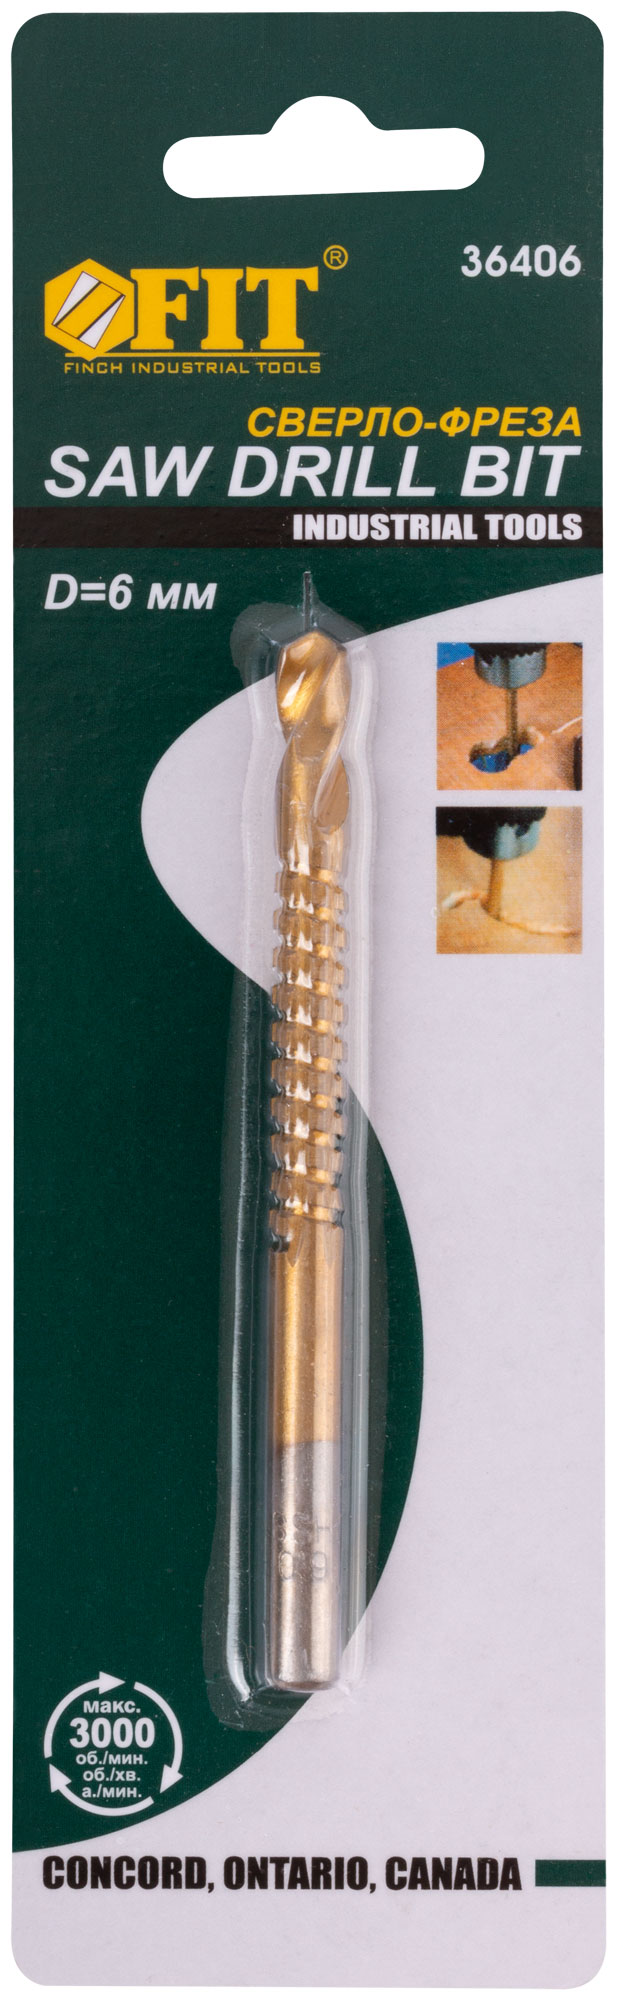 Сверло-фреза универсальное титановое покрытие 6 мм